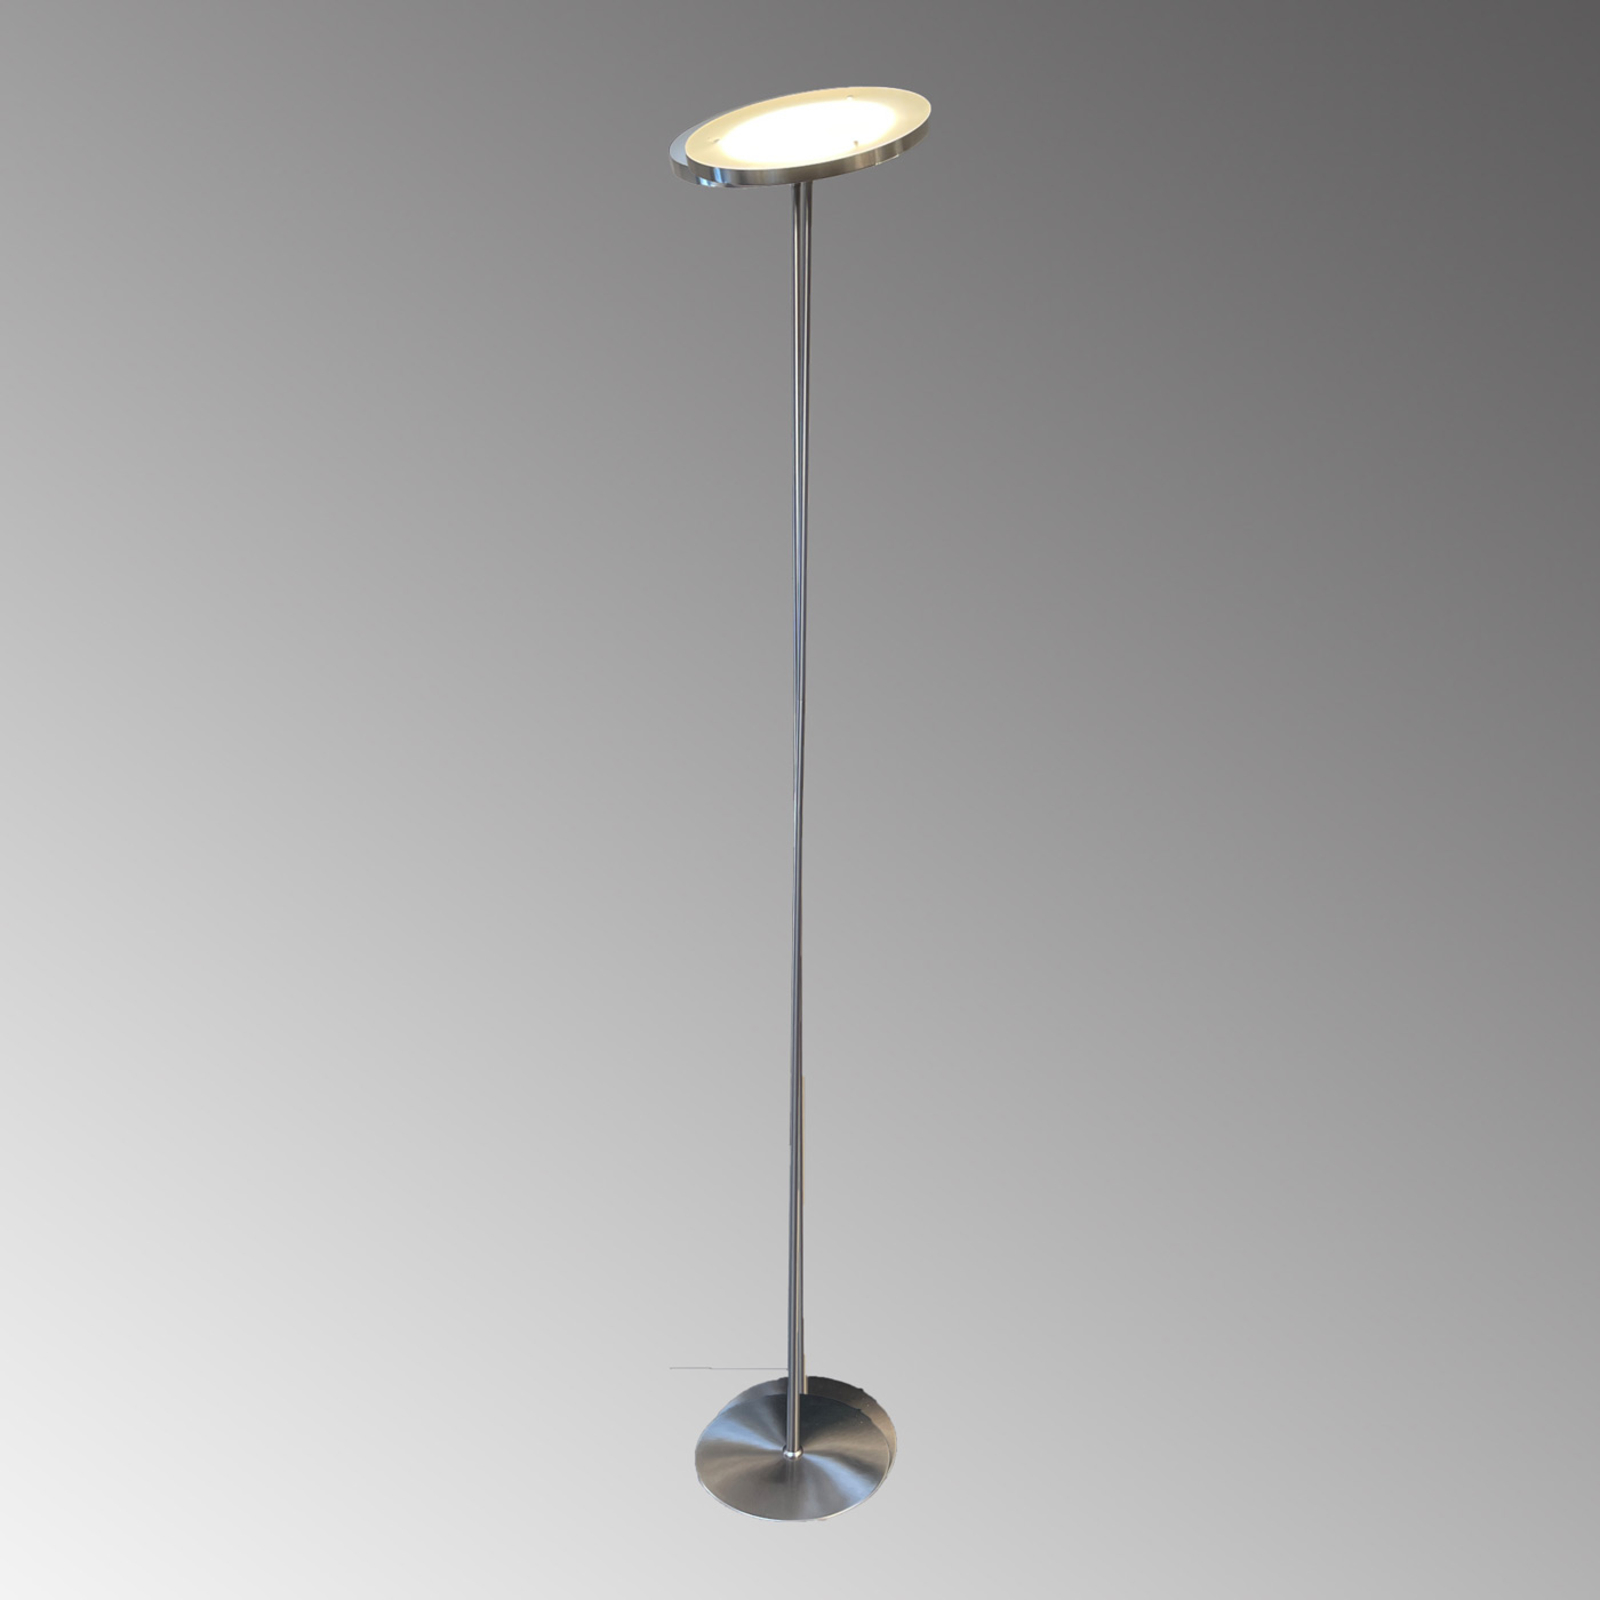 Lampă de podea cu LED Fabi din metal, dimabilizabilă, nichel